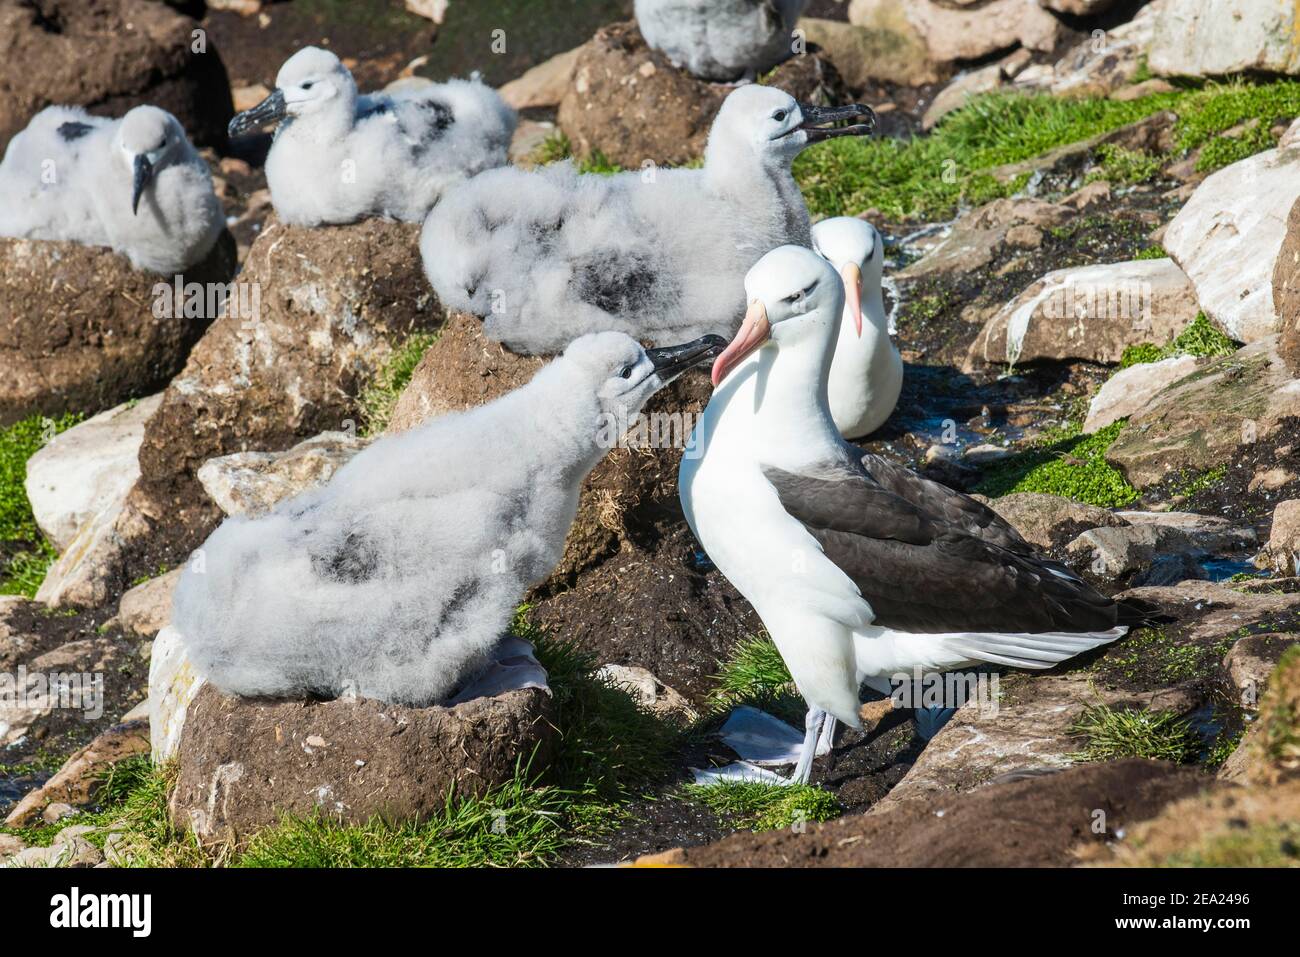 Colonie de mère d'albatros brun noir qui nourrit un poussin (Thalassarche melanophris), île de Saunders, Falklands, Amérique du Sud Banque D'Images